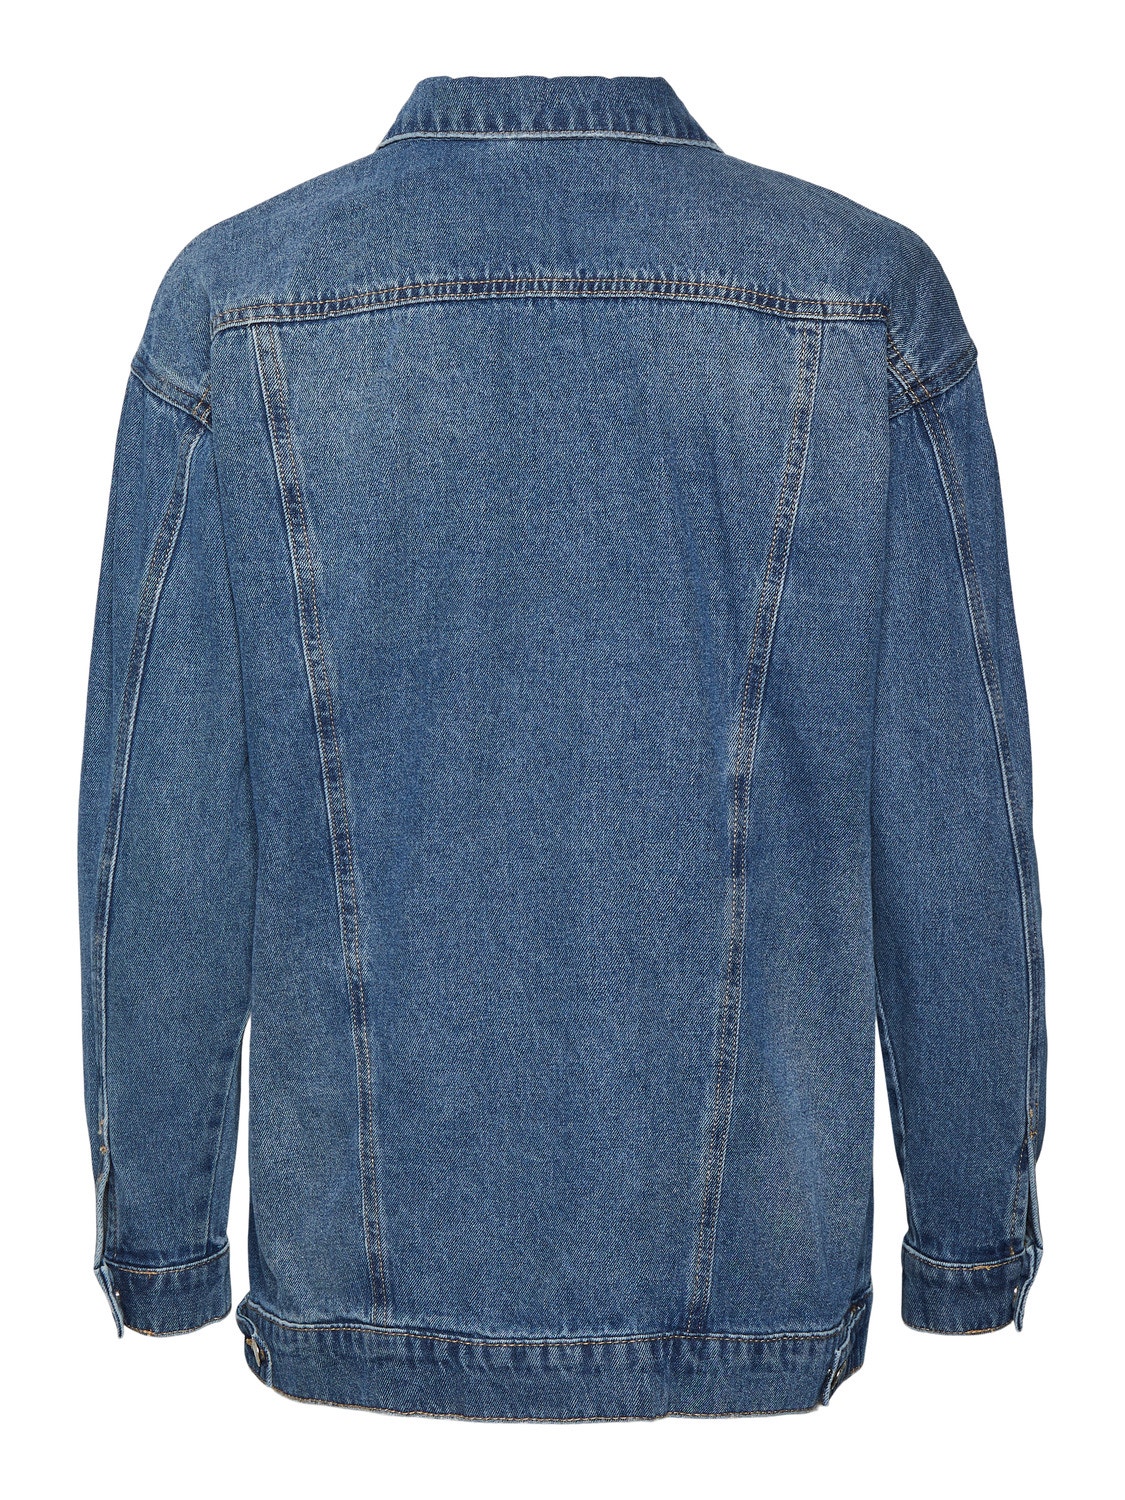 Vero Moda VMOLIVIA Jacket -Medium Blue Denim - 10246948